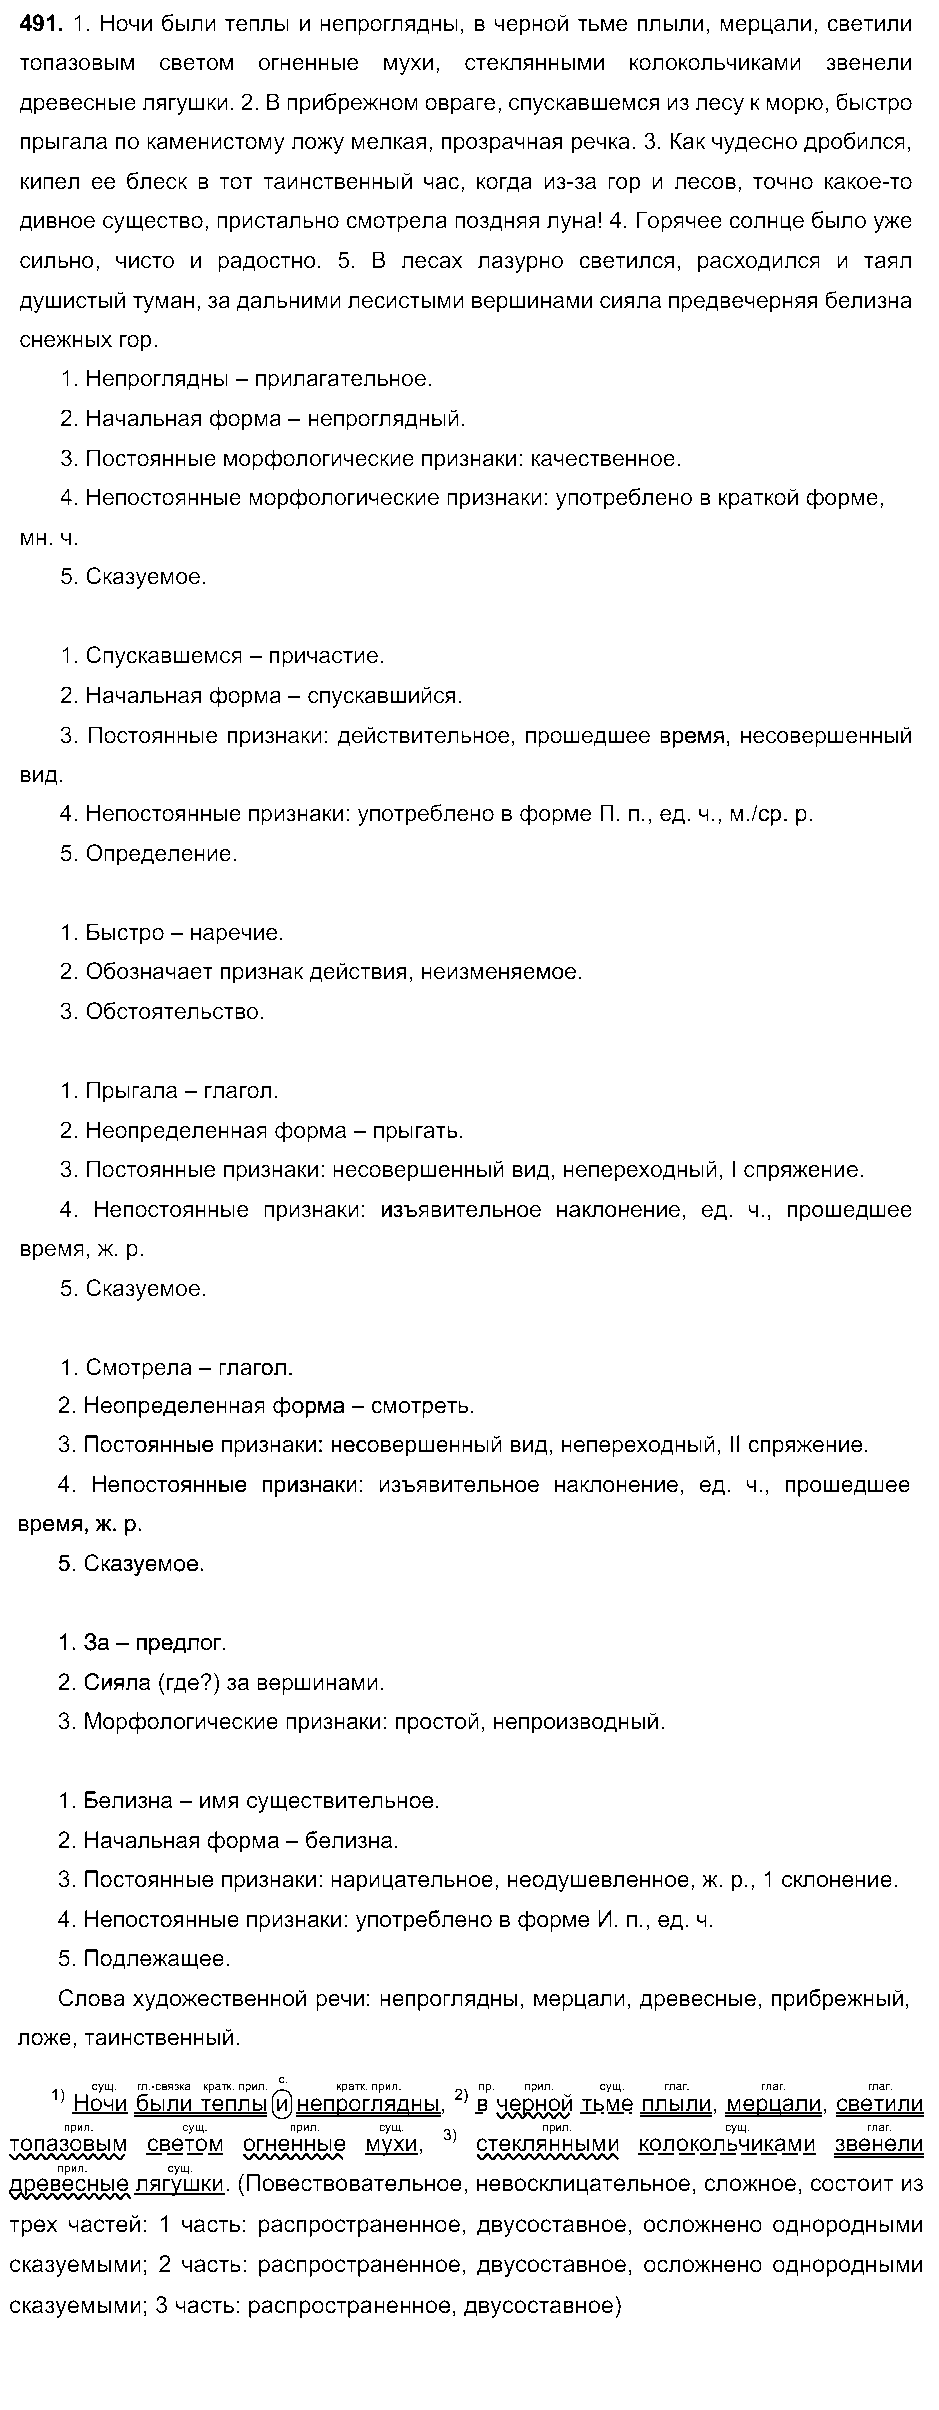 ГДЗ Русский язык 7 класс - 491